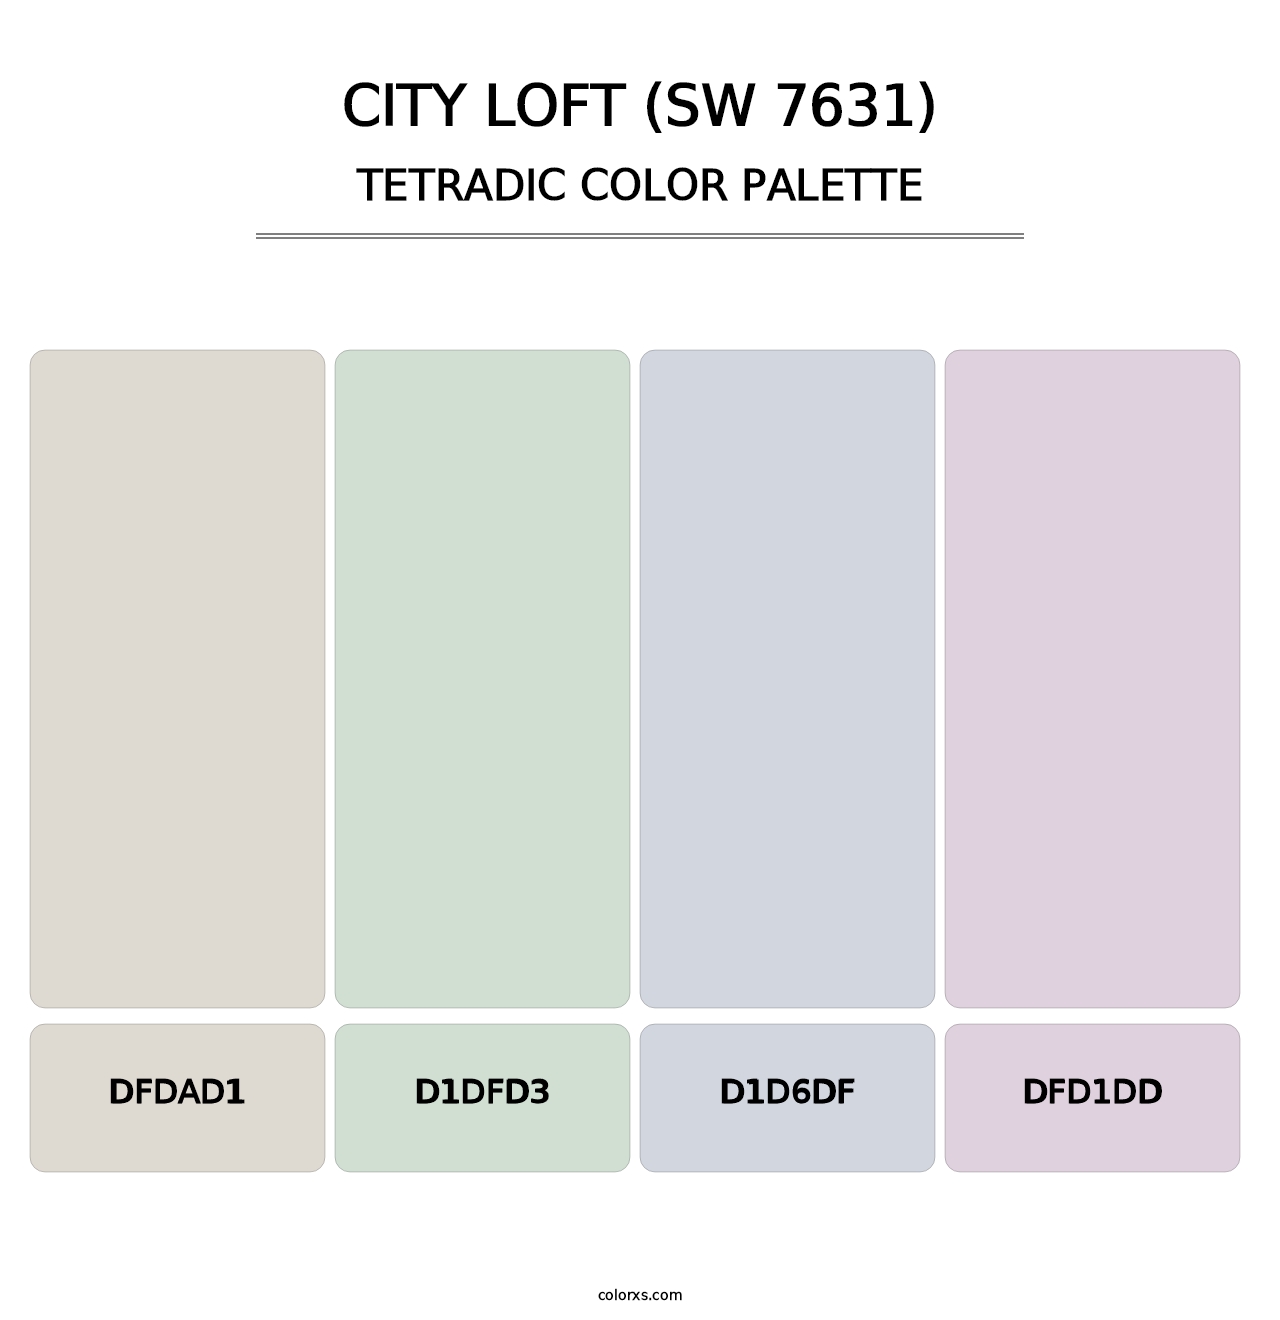 City Loft (SW 7631) - Tetradic Color Palette